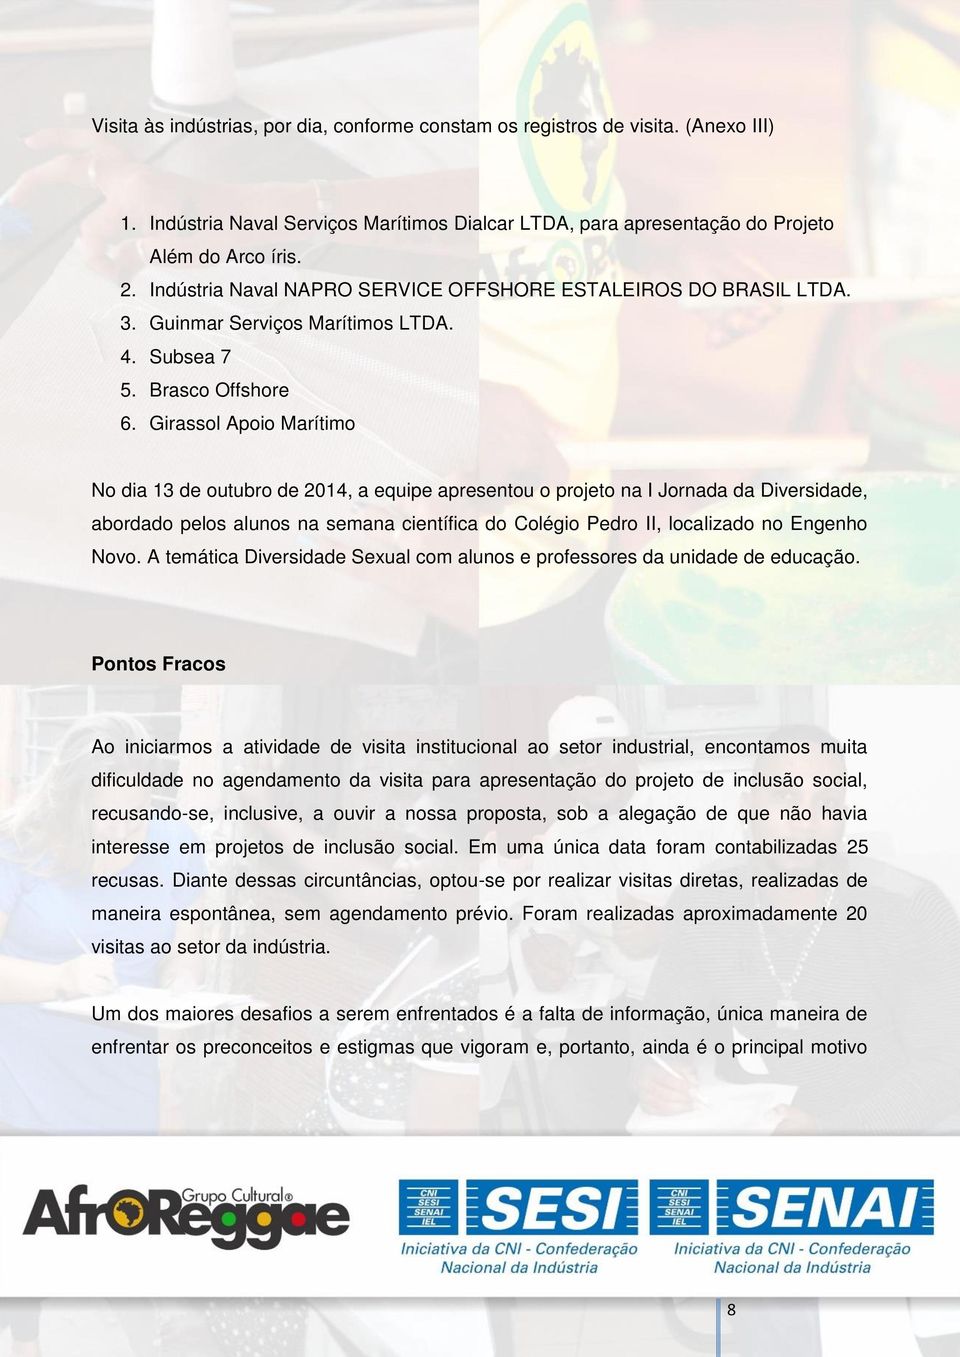 Girassol Apoio Marítimo No dia 13 de outubro de 2014, a equipe apresentou o projeto na I Jornada da Diversidade, abordado pelos alunos na semana científica do Colégio Pedro II, localizado no Engenho